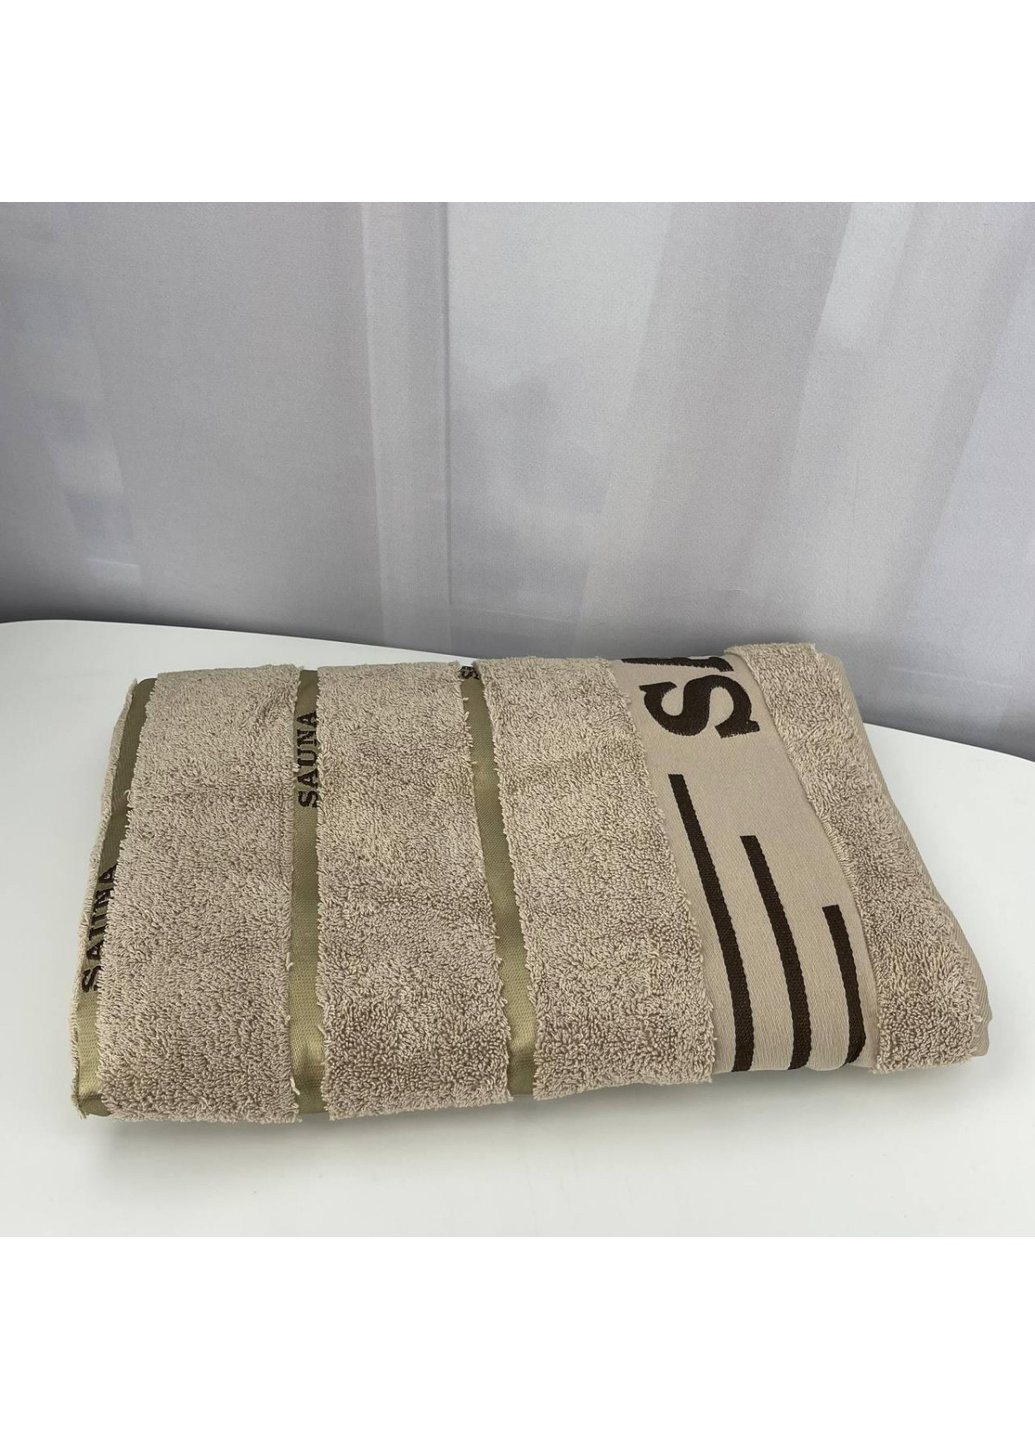 Cestepe полотенце для сауны махровое sauna турция 6339 бежевое 90х165 см комбинированный производство - Турция